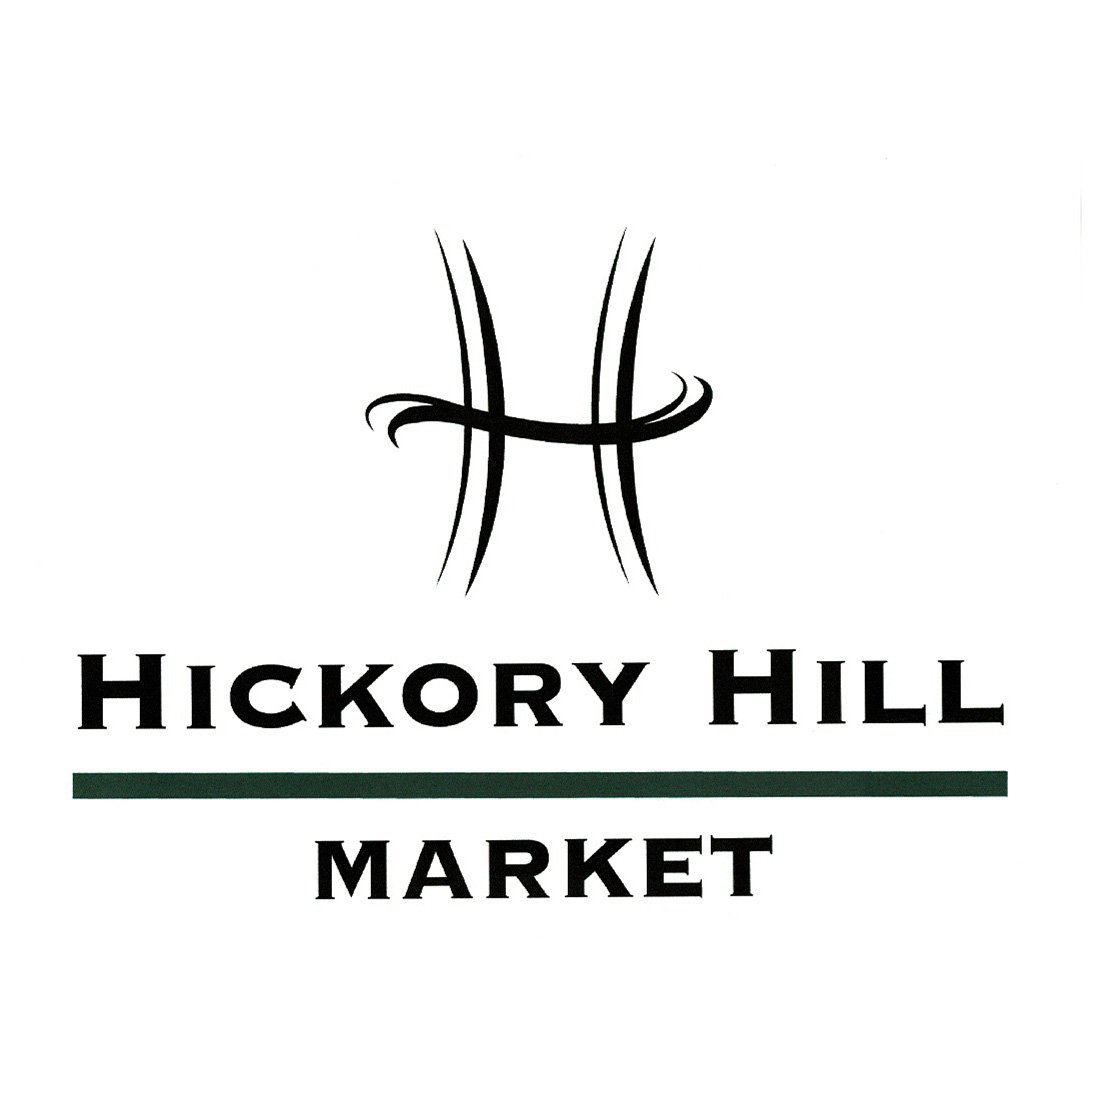 Hickory Hill Market